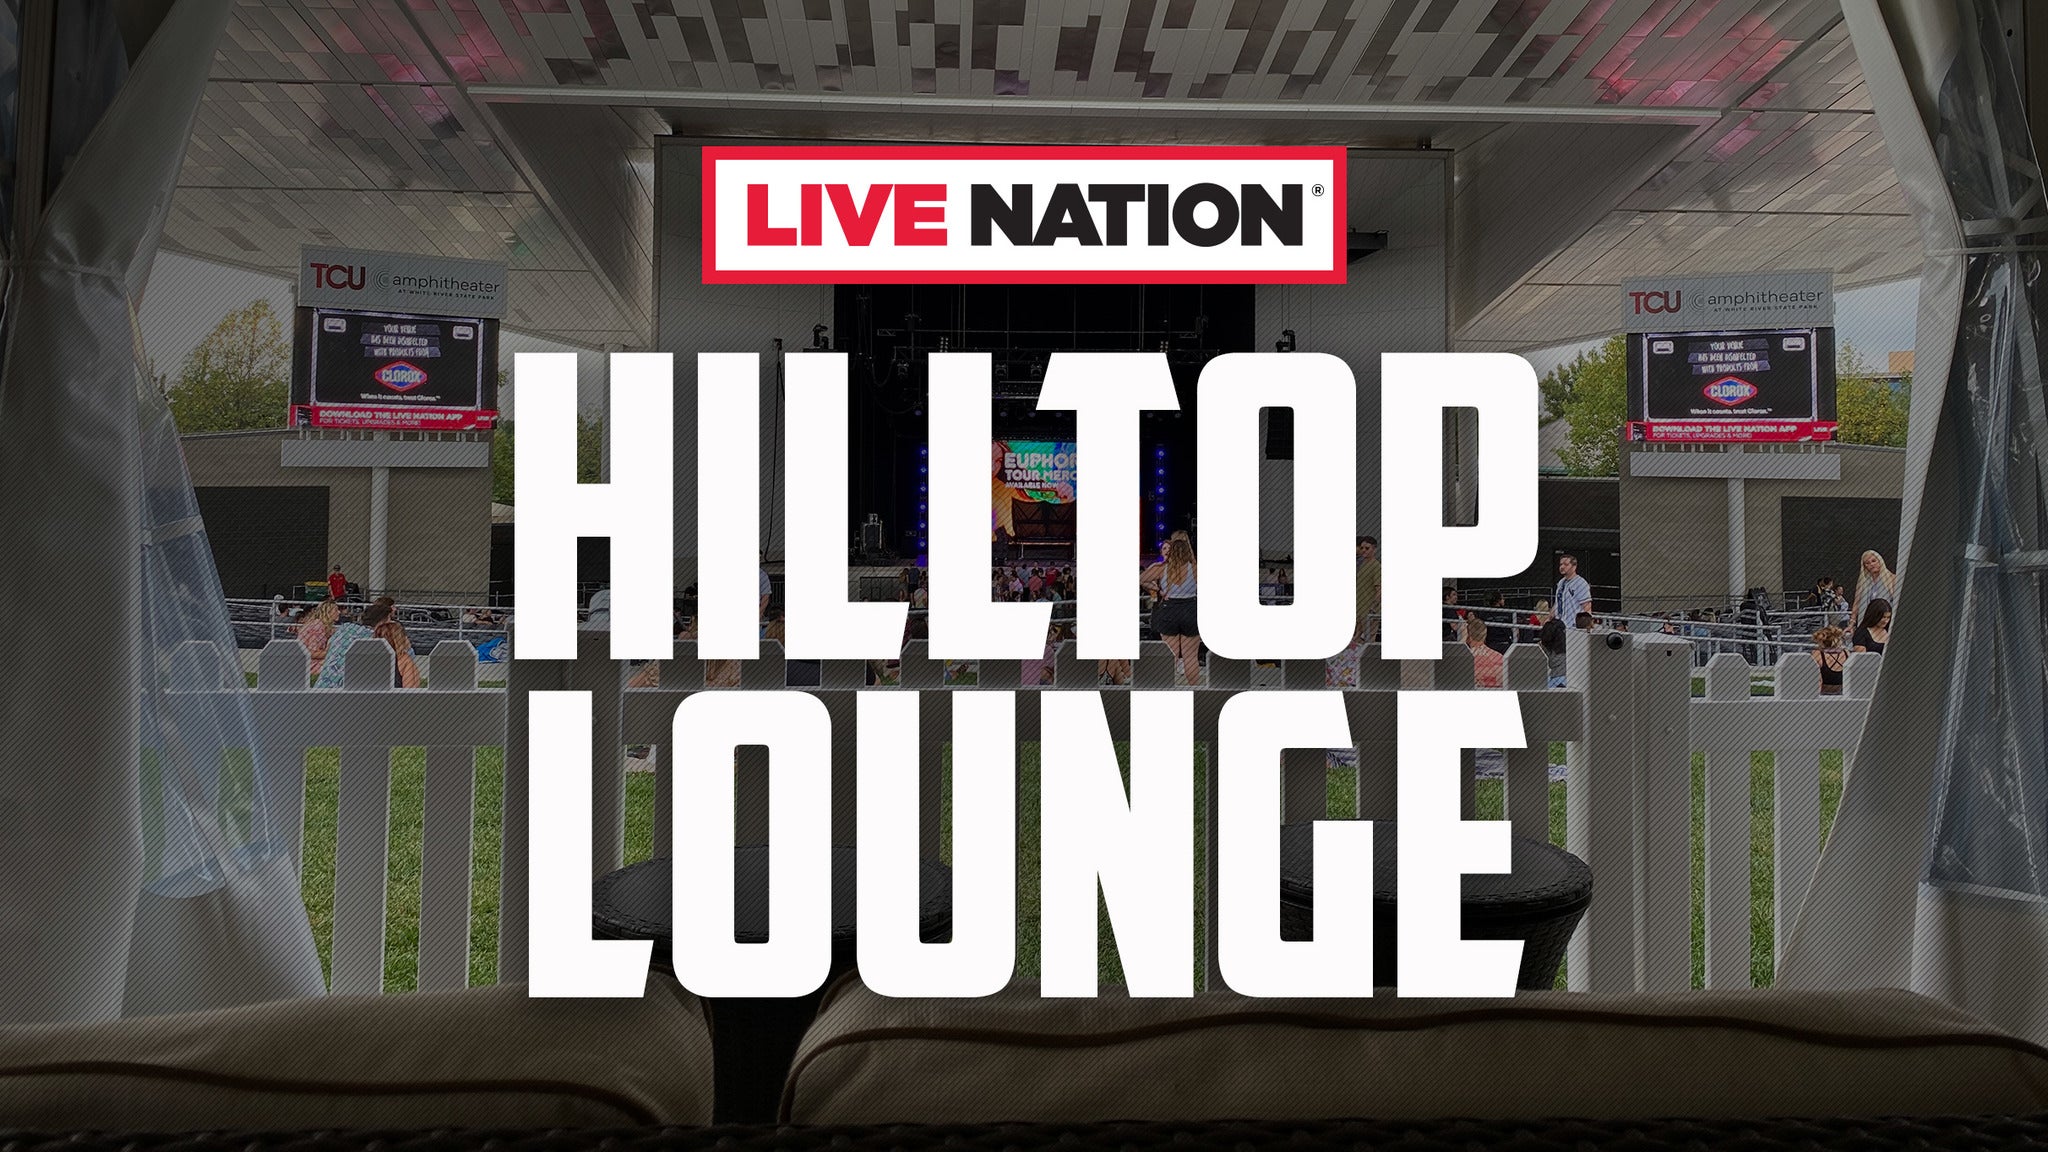 Live Nation Hilltop Lounge presale information on freepresalepasswords.com